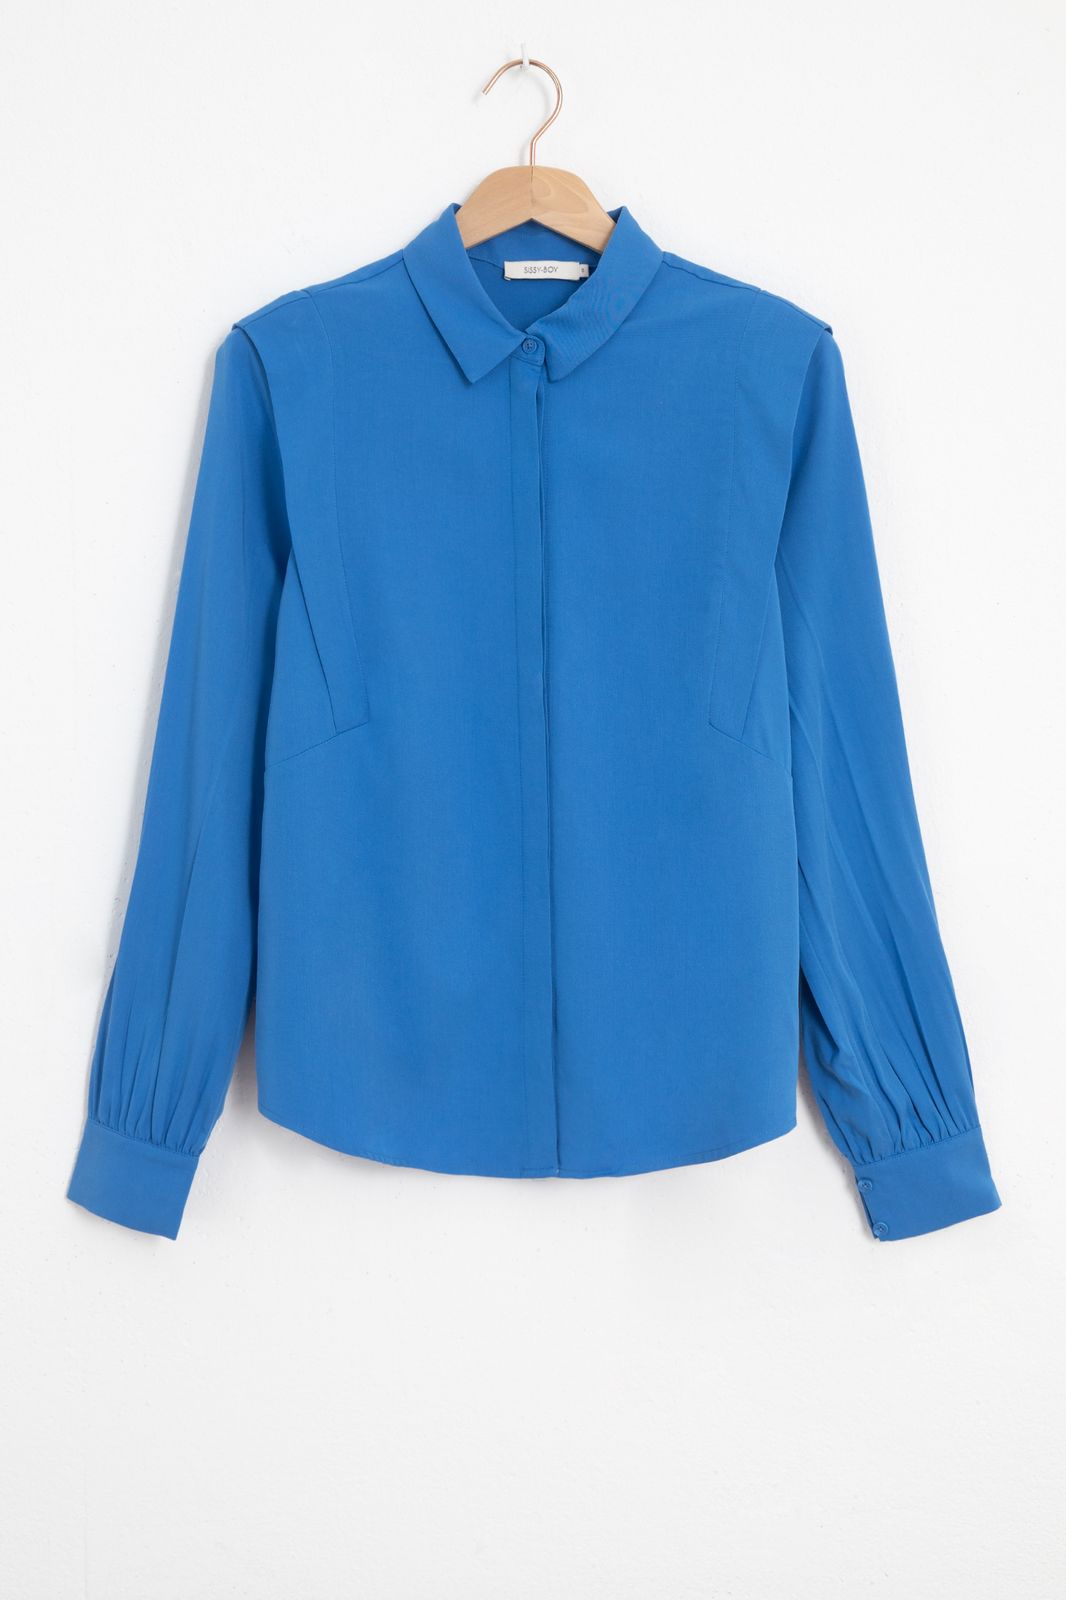 Bluse mit Schulterdetails - blau